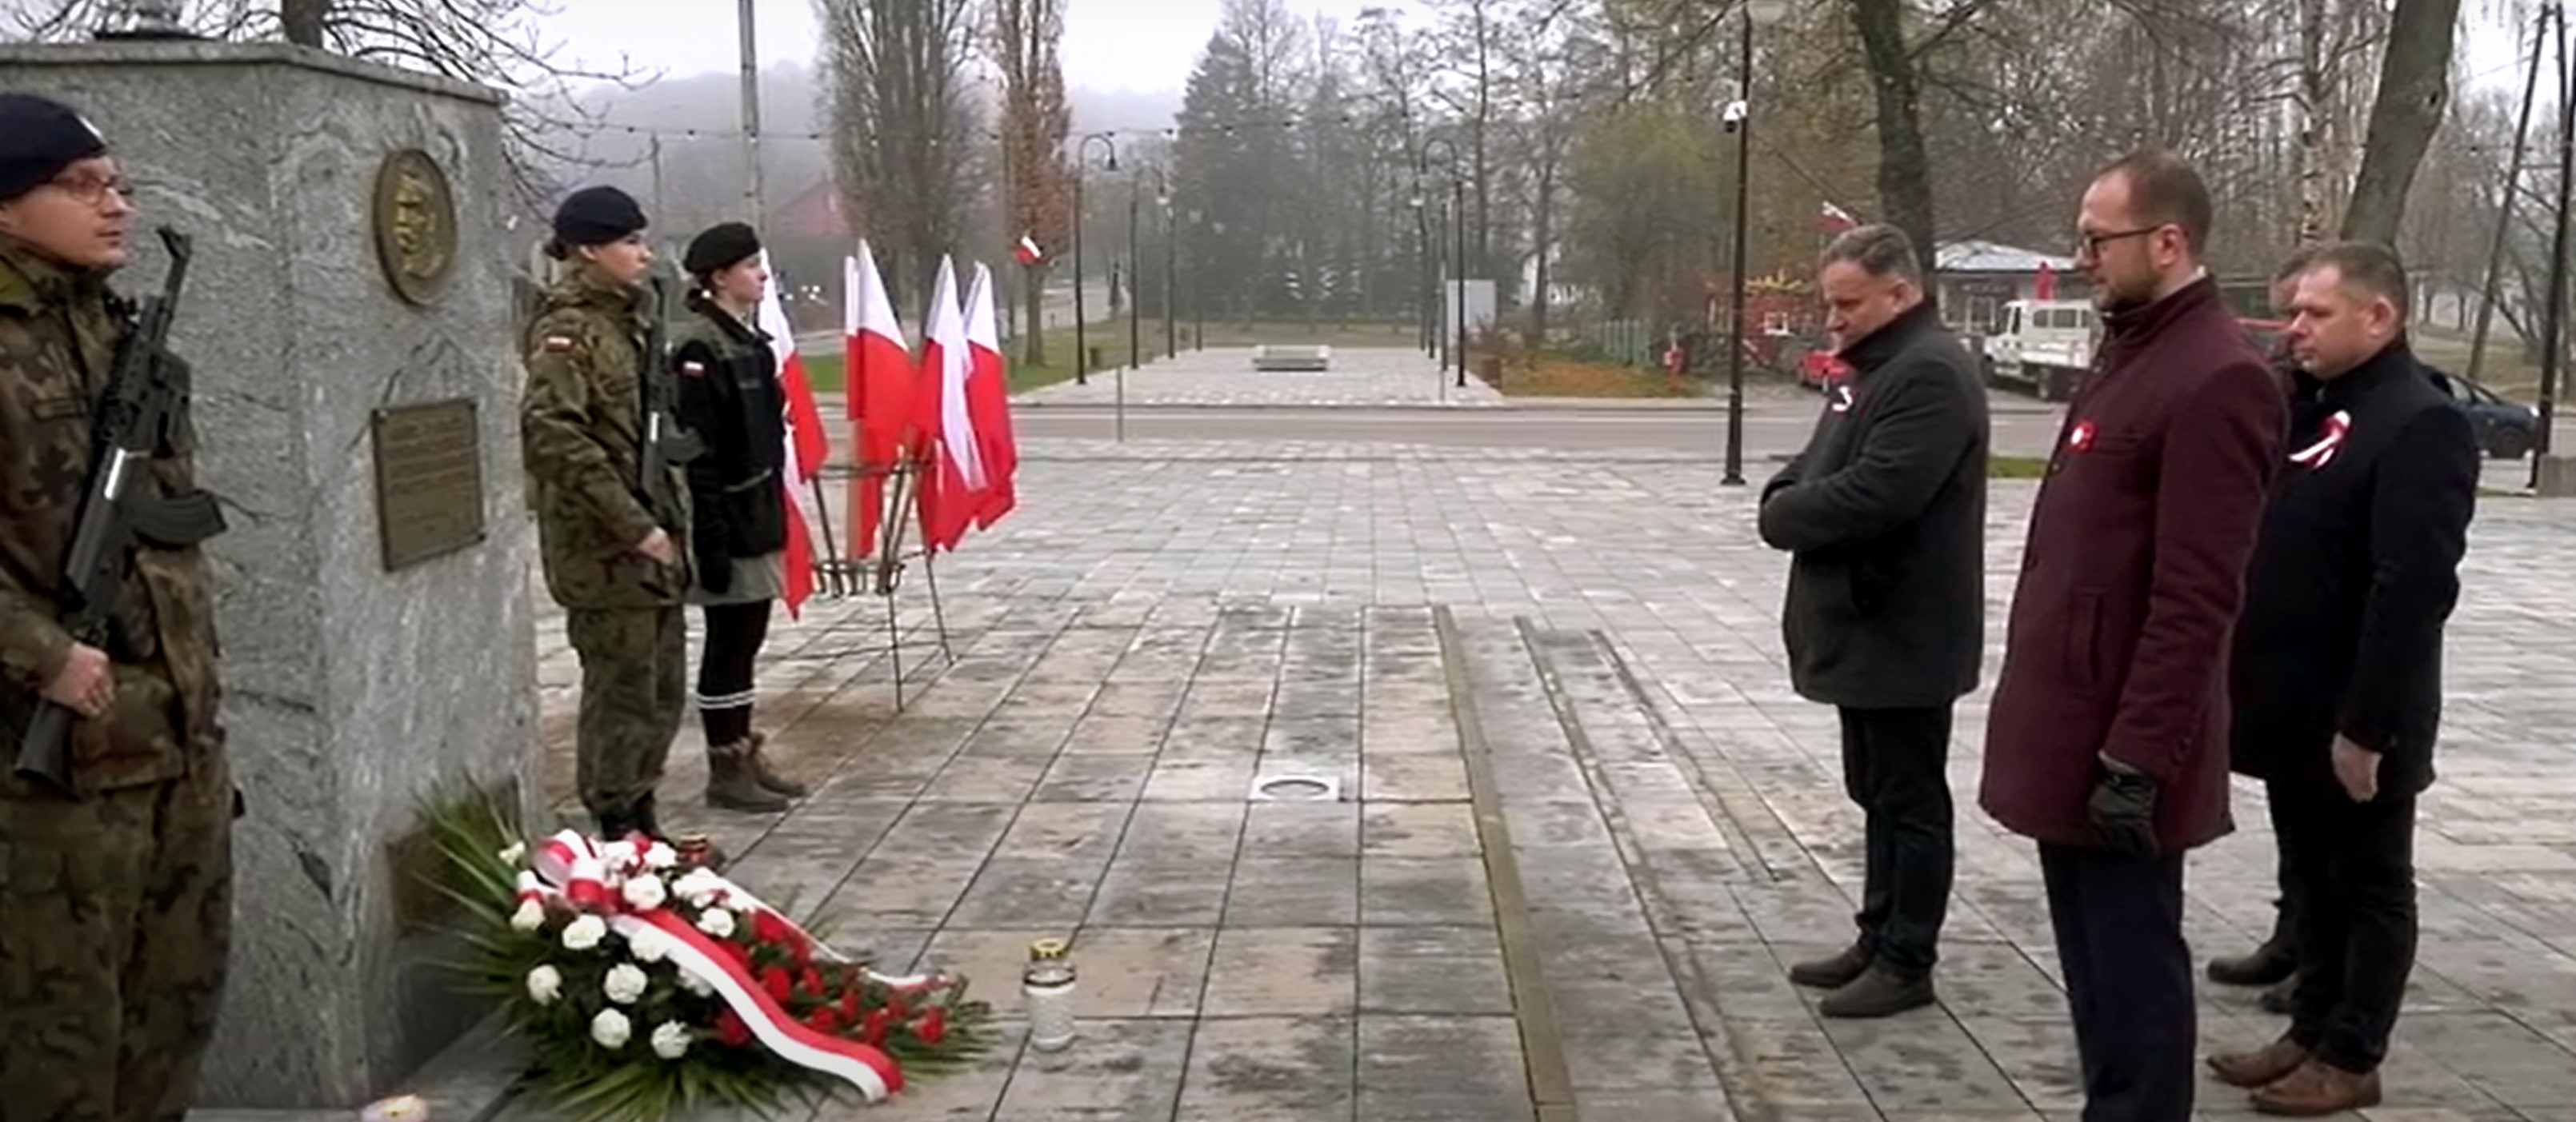 złożenie kwiatów pod pomnikiem Piłsudskiego